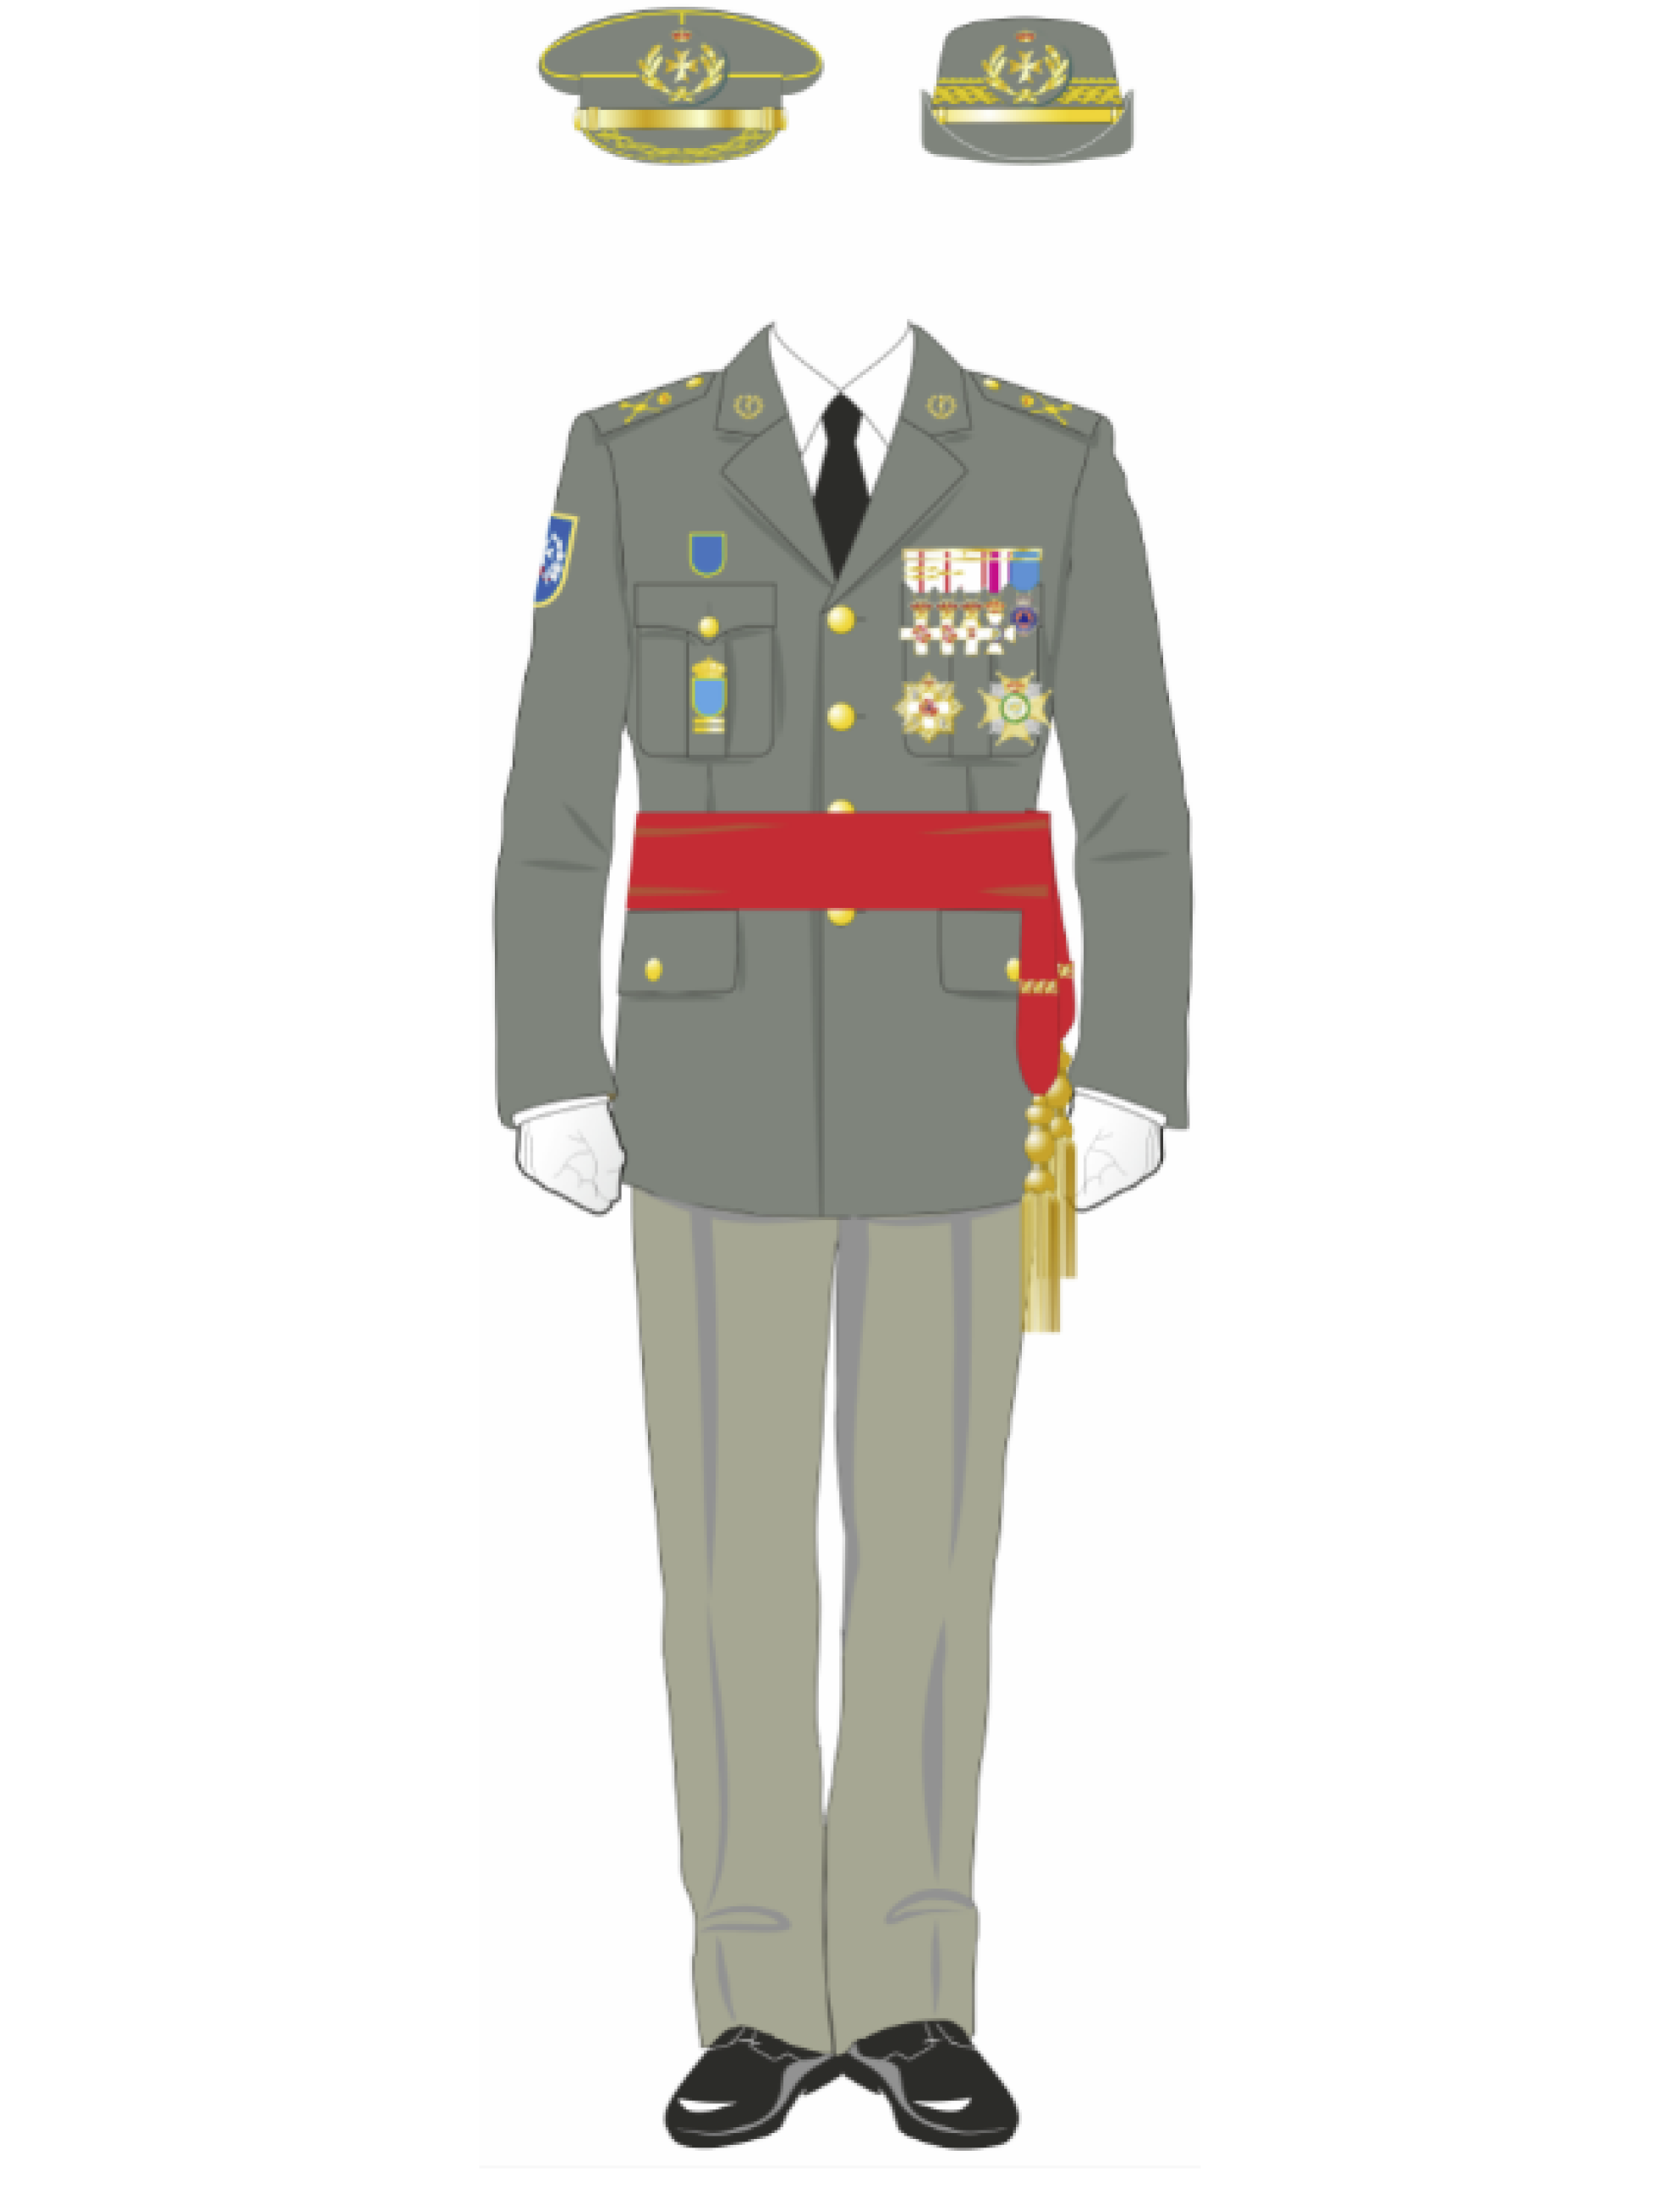 BOE-A-2020-45 Orden DEF/1282/2019, de 19 de diciembre, por la que se  modifica la Orden DEF/1756/2016, de 28 de octubre, por la que se aprueban  las normas de uniformidad de las Fuerzas Armadas.